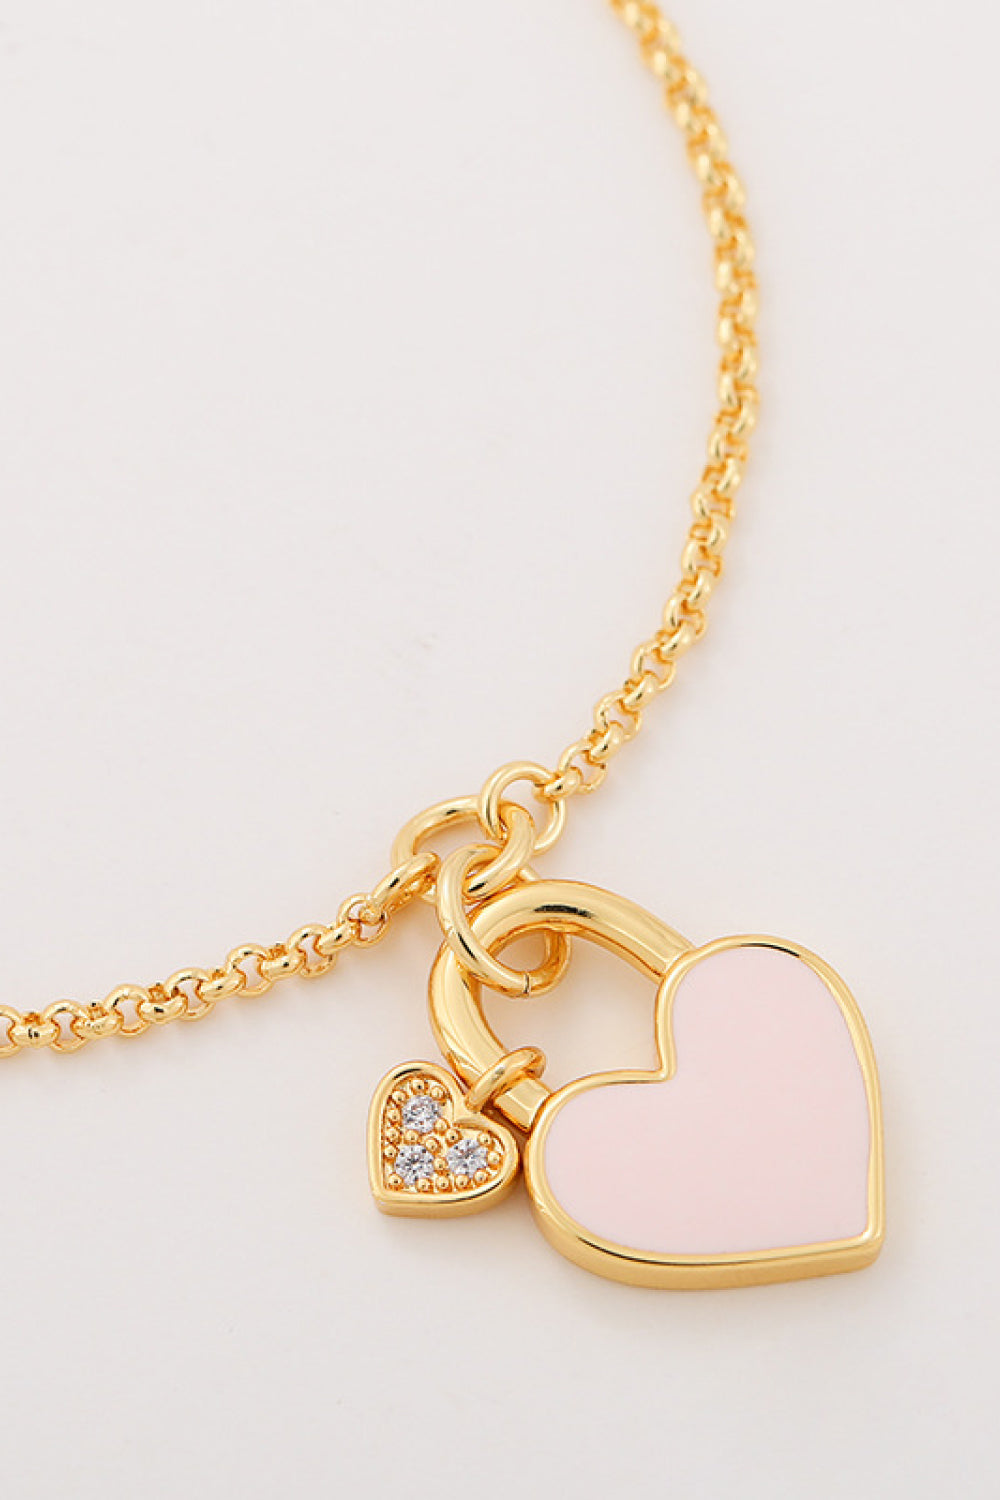 Heart Lock Charm Bracelet - Women’s Jewelry - Bracelets - 5 - 2024